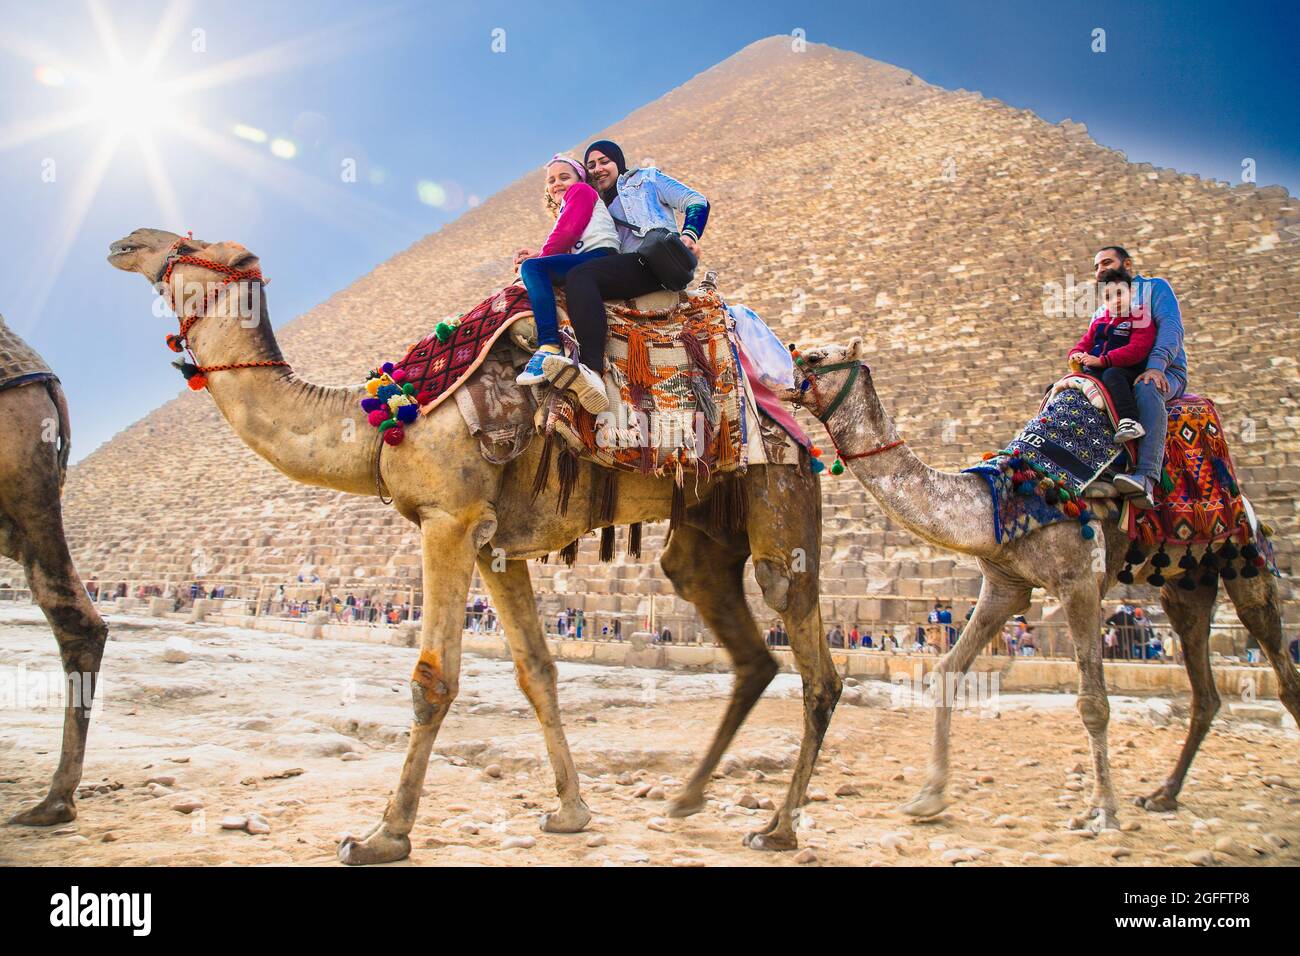 Caikro, Égypte-31 janvier 2020 : touristes en chameaux près des grandes pyramides de Gizeh, Égypte Banque D'Images